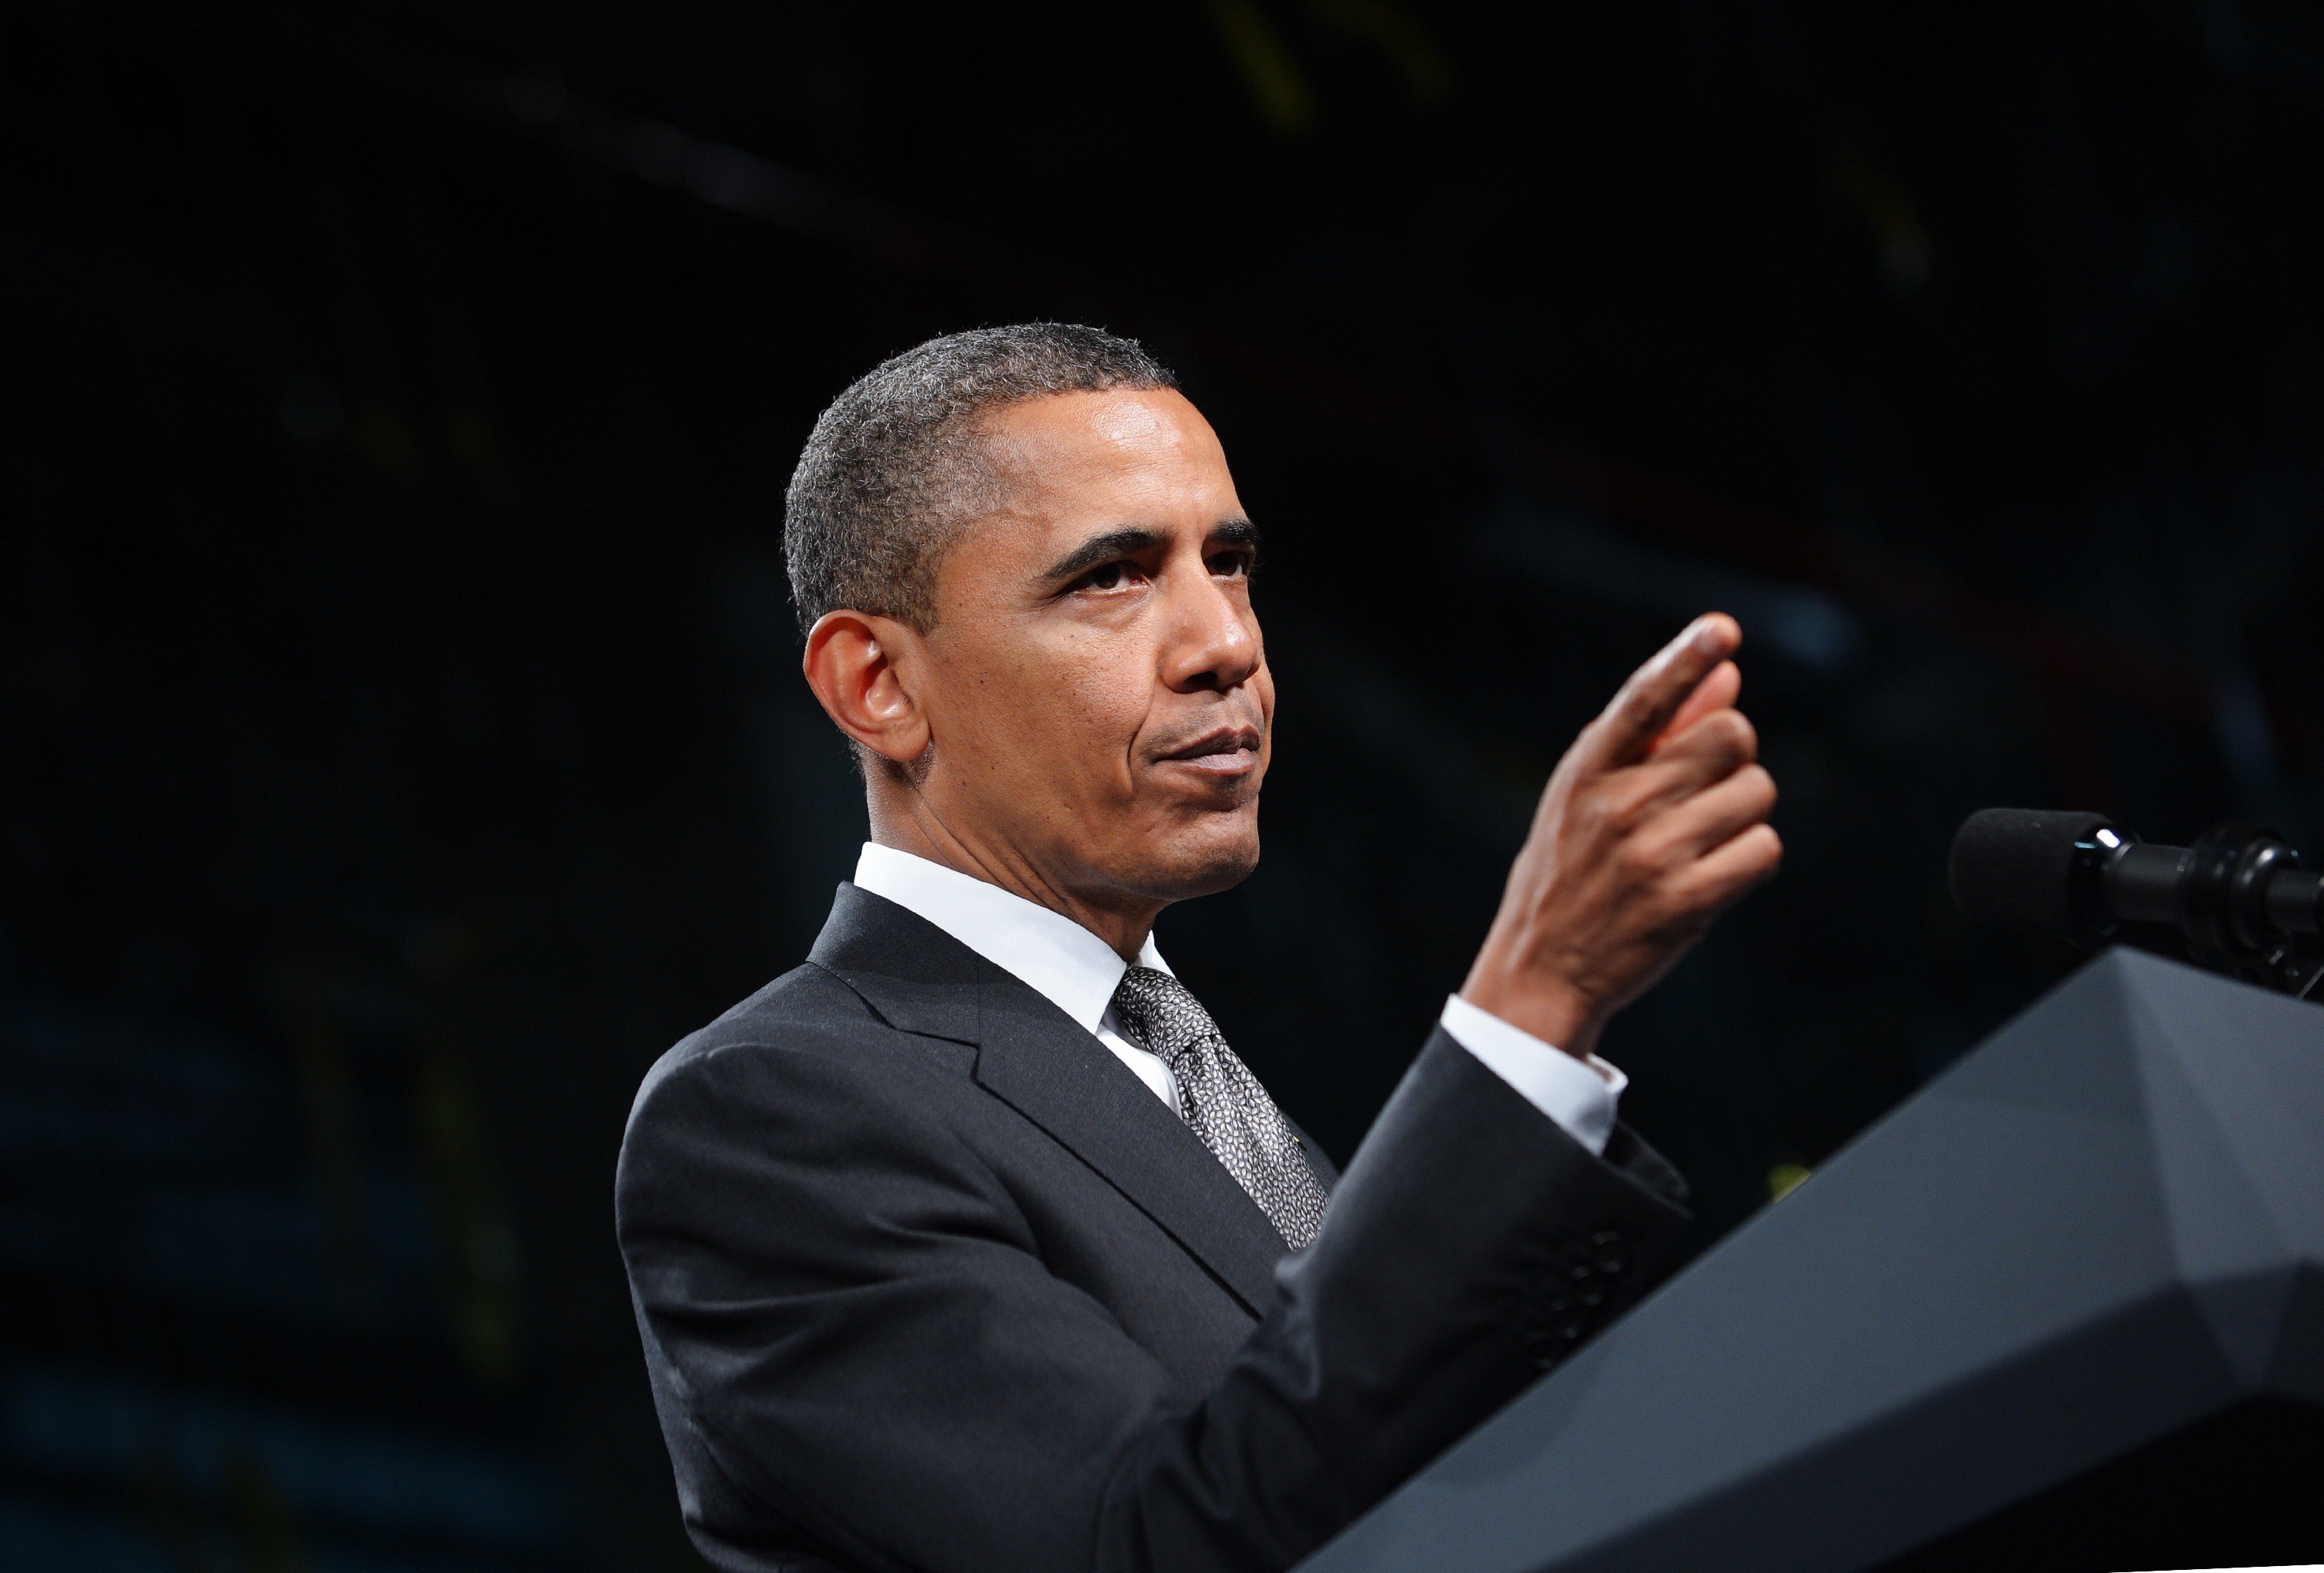 3000x2031 President Barack Obama men african american usa america politics power  speech wallpaper |  | 32236 | WallpaperUP